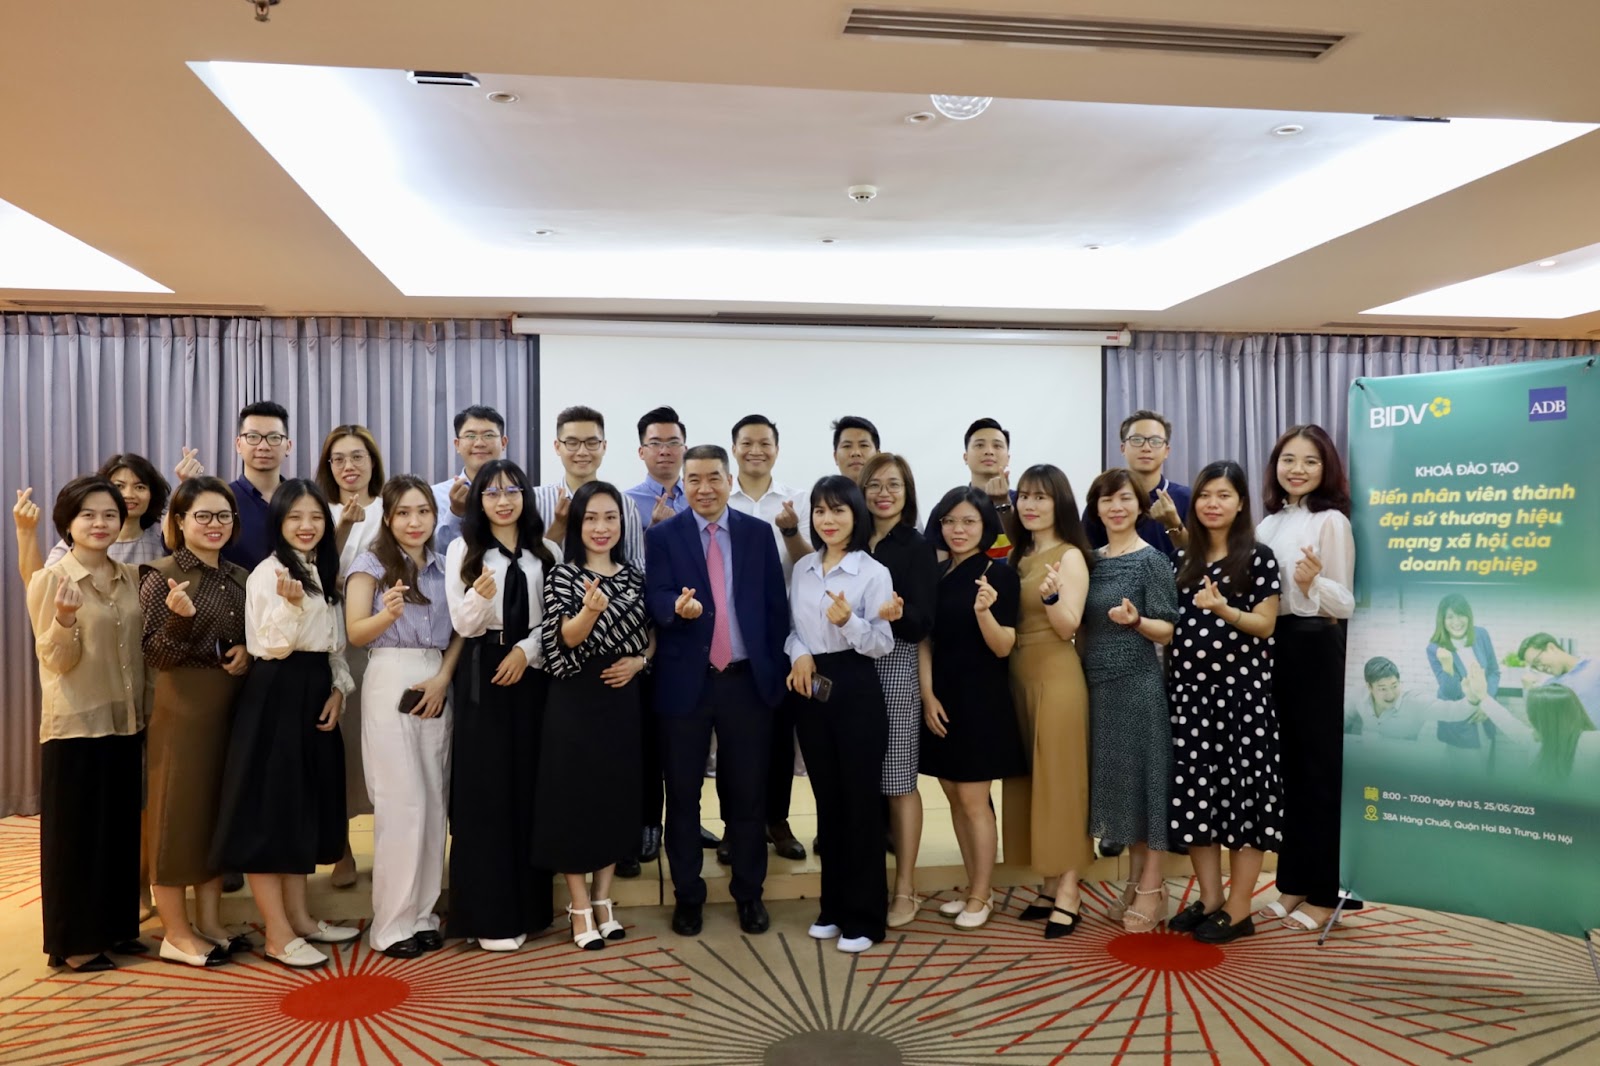 Hơn 30 khách hàng doanh nghiệp của BIDV tham dự khóa đào tạo về Social Employee tại Hà Nội